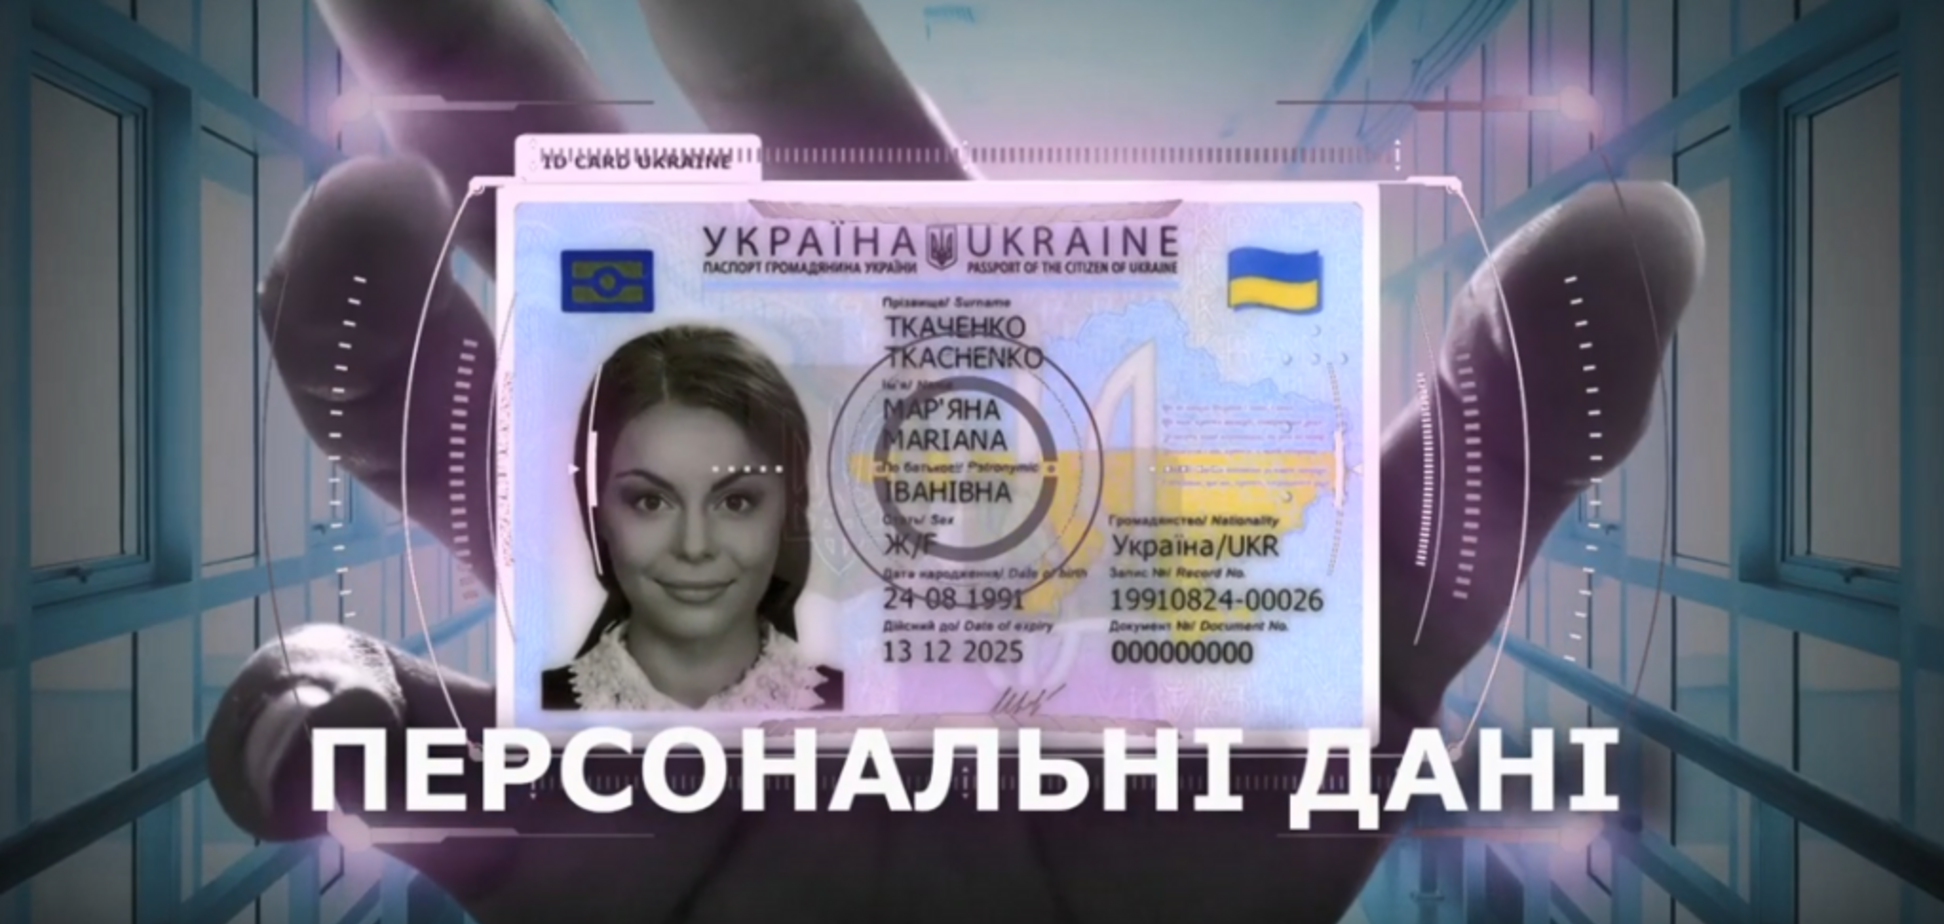 Компания времен Януковича будет печатать паспорта украинцам: все детали расследования